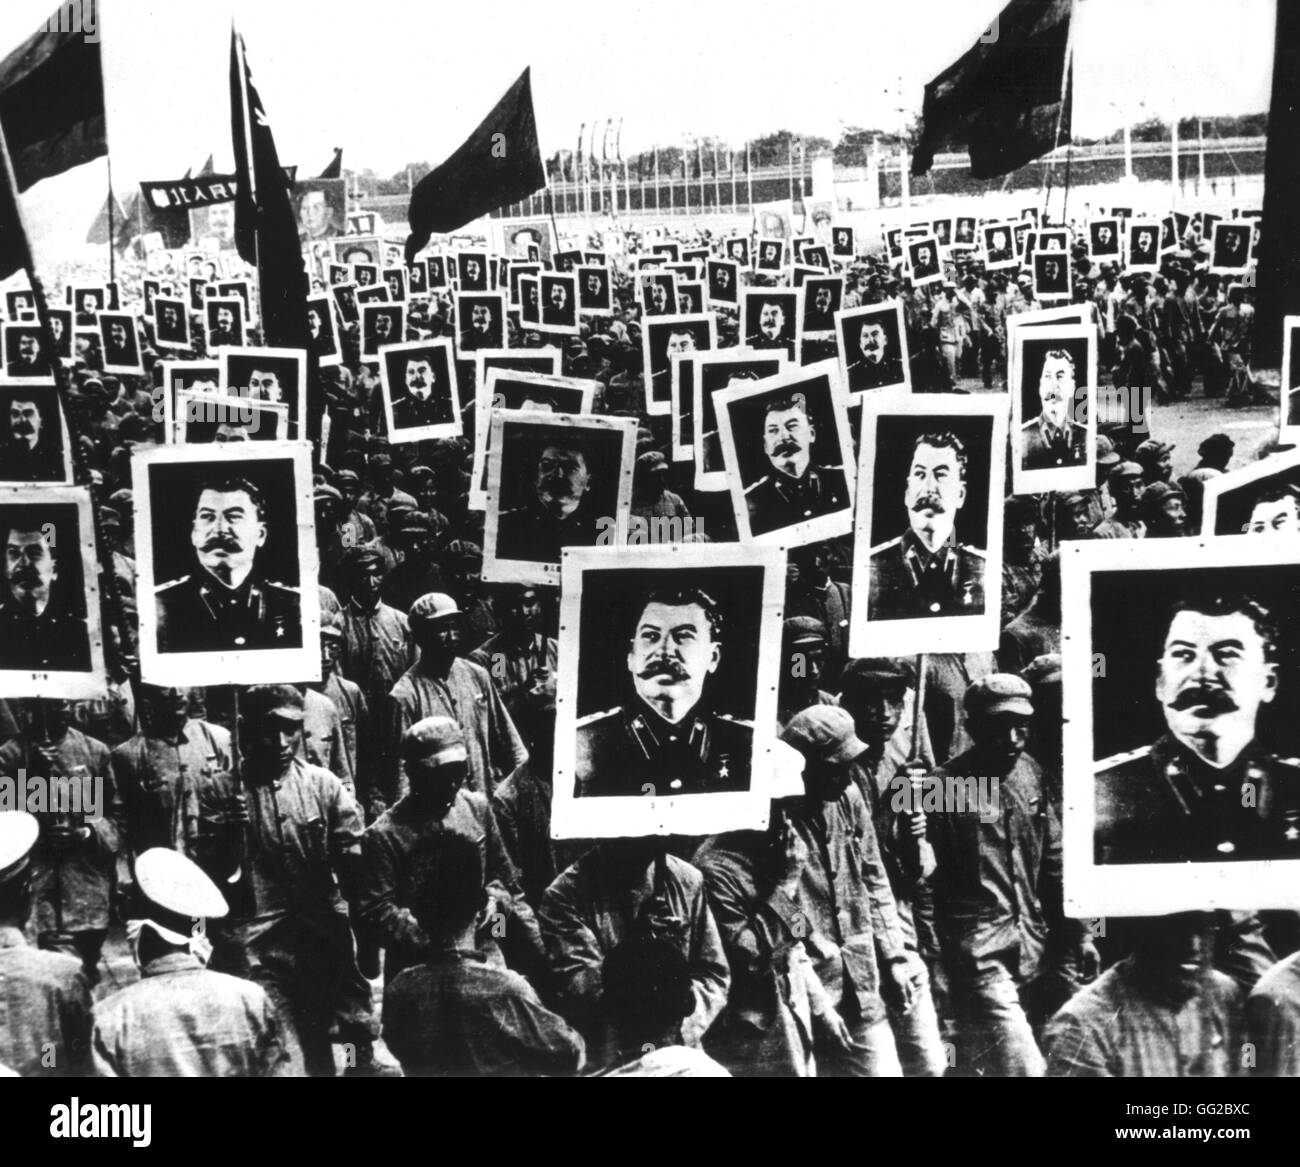 Demonstration celebrating Stalin 1950 China National Archives - Washington Stock Photo